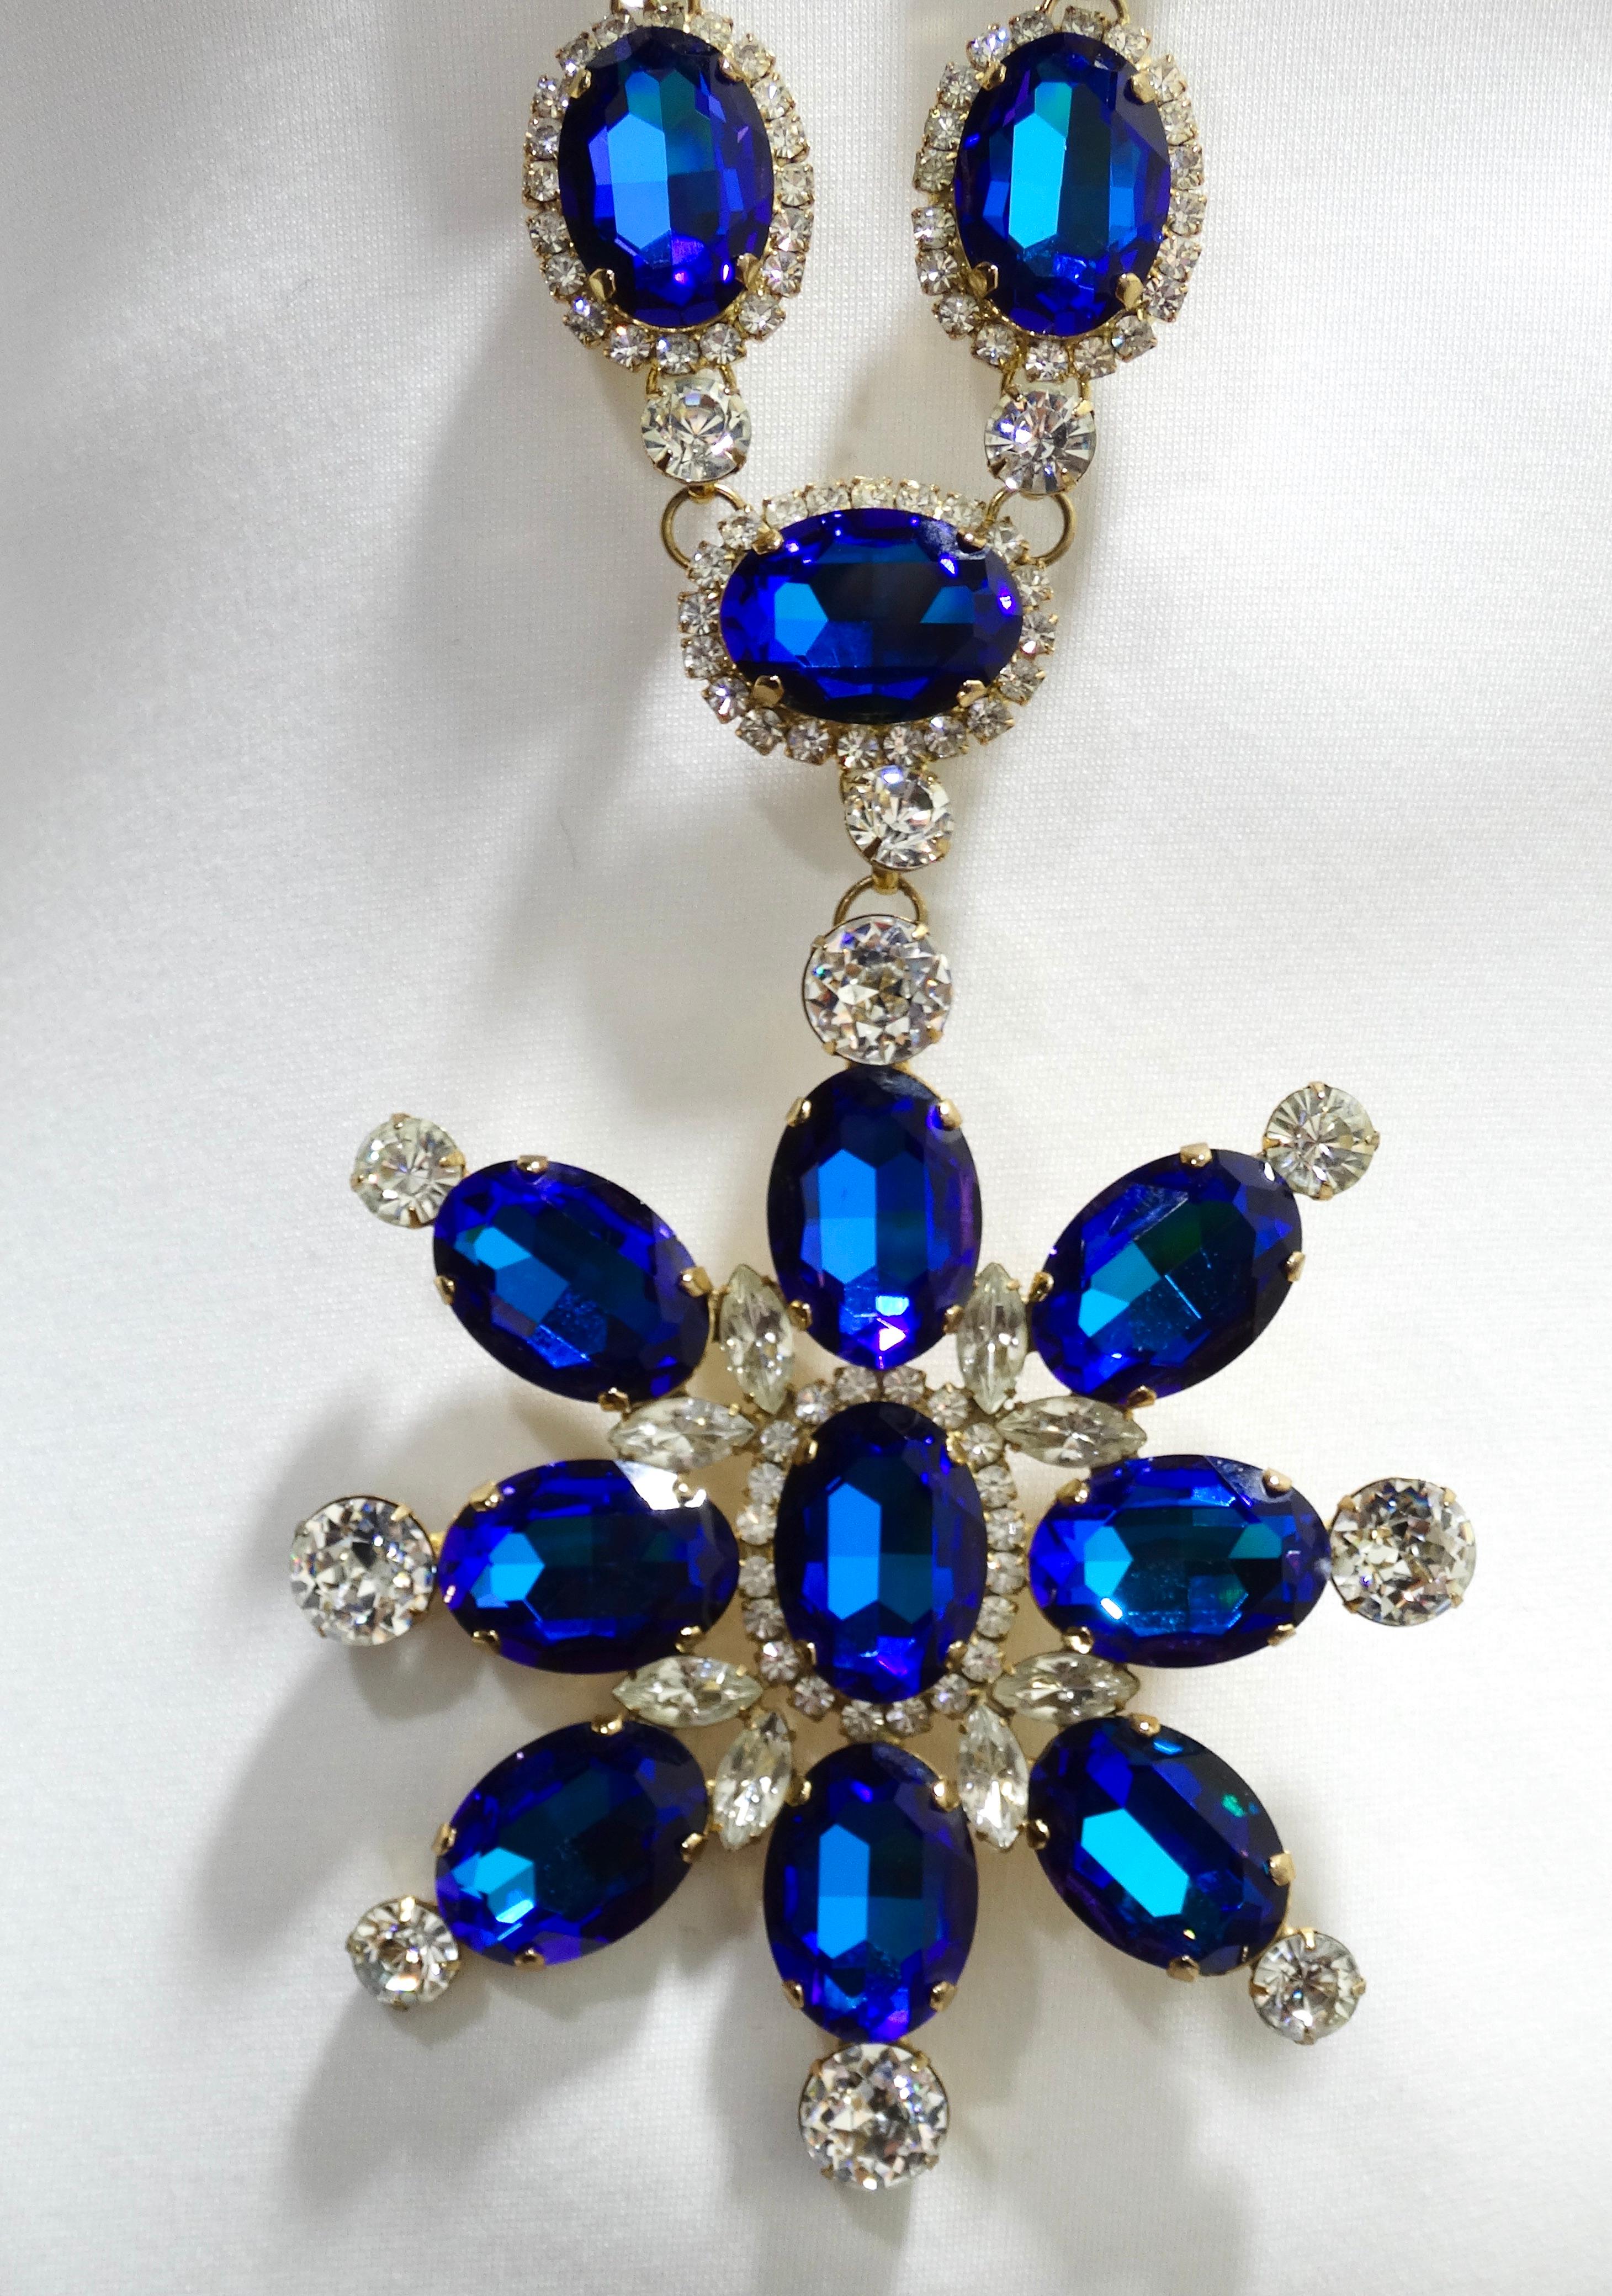 jeweled bib necklace